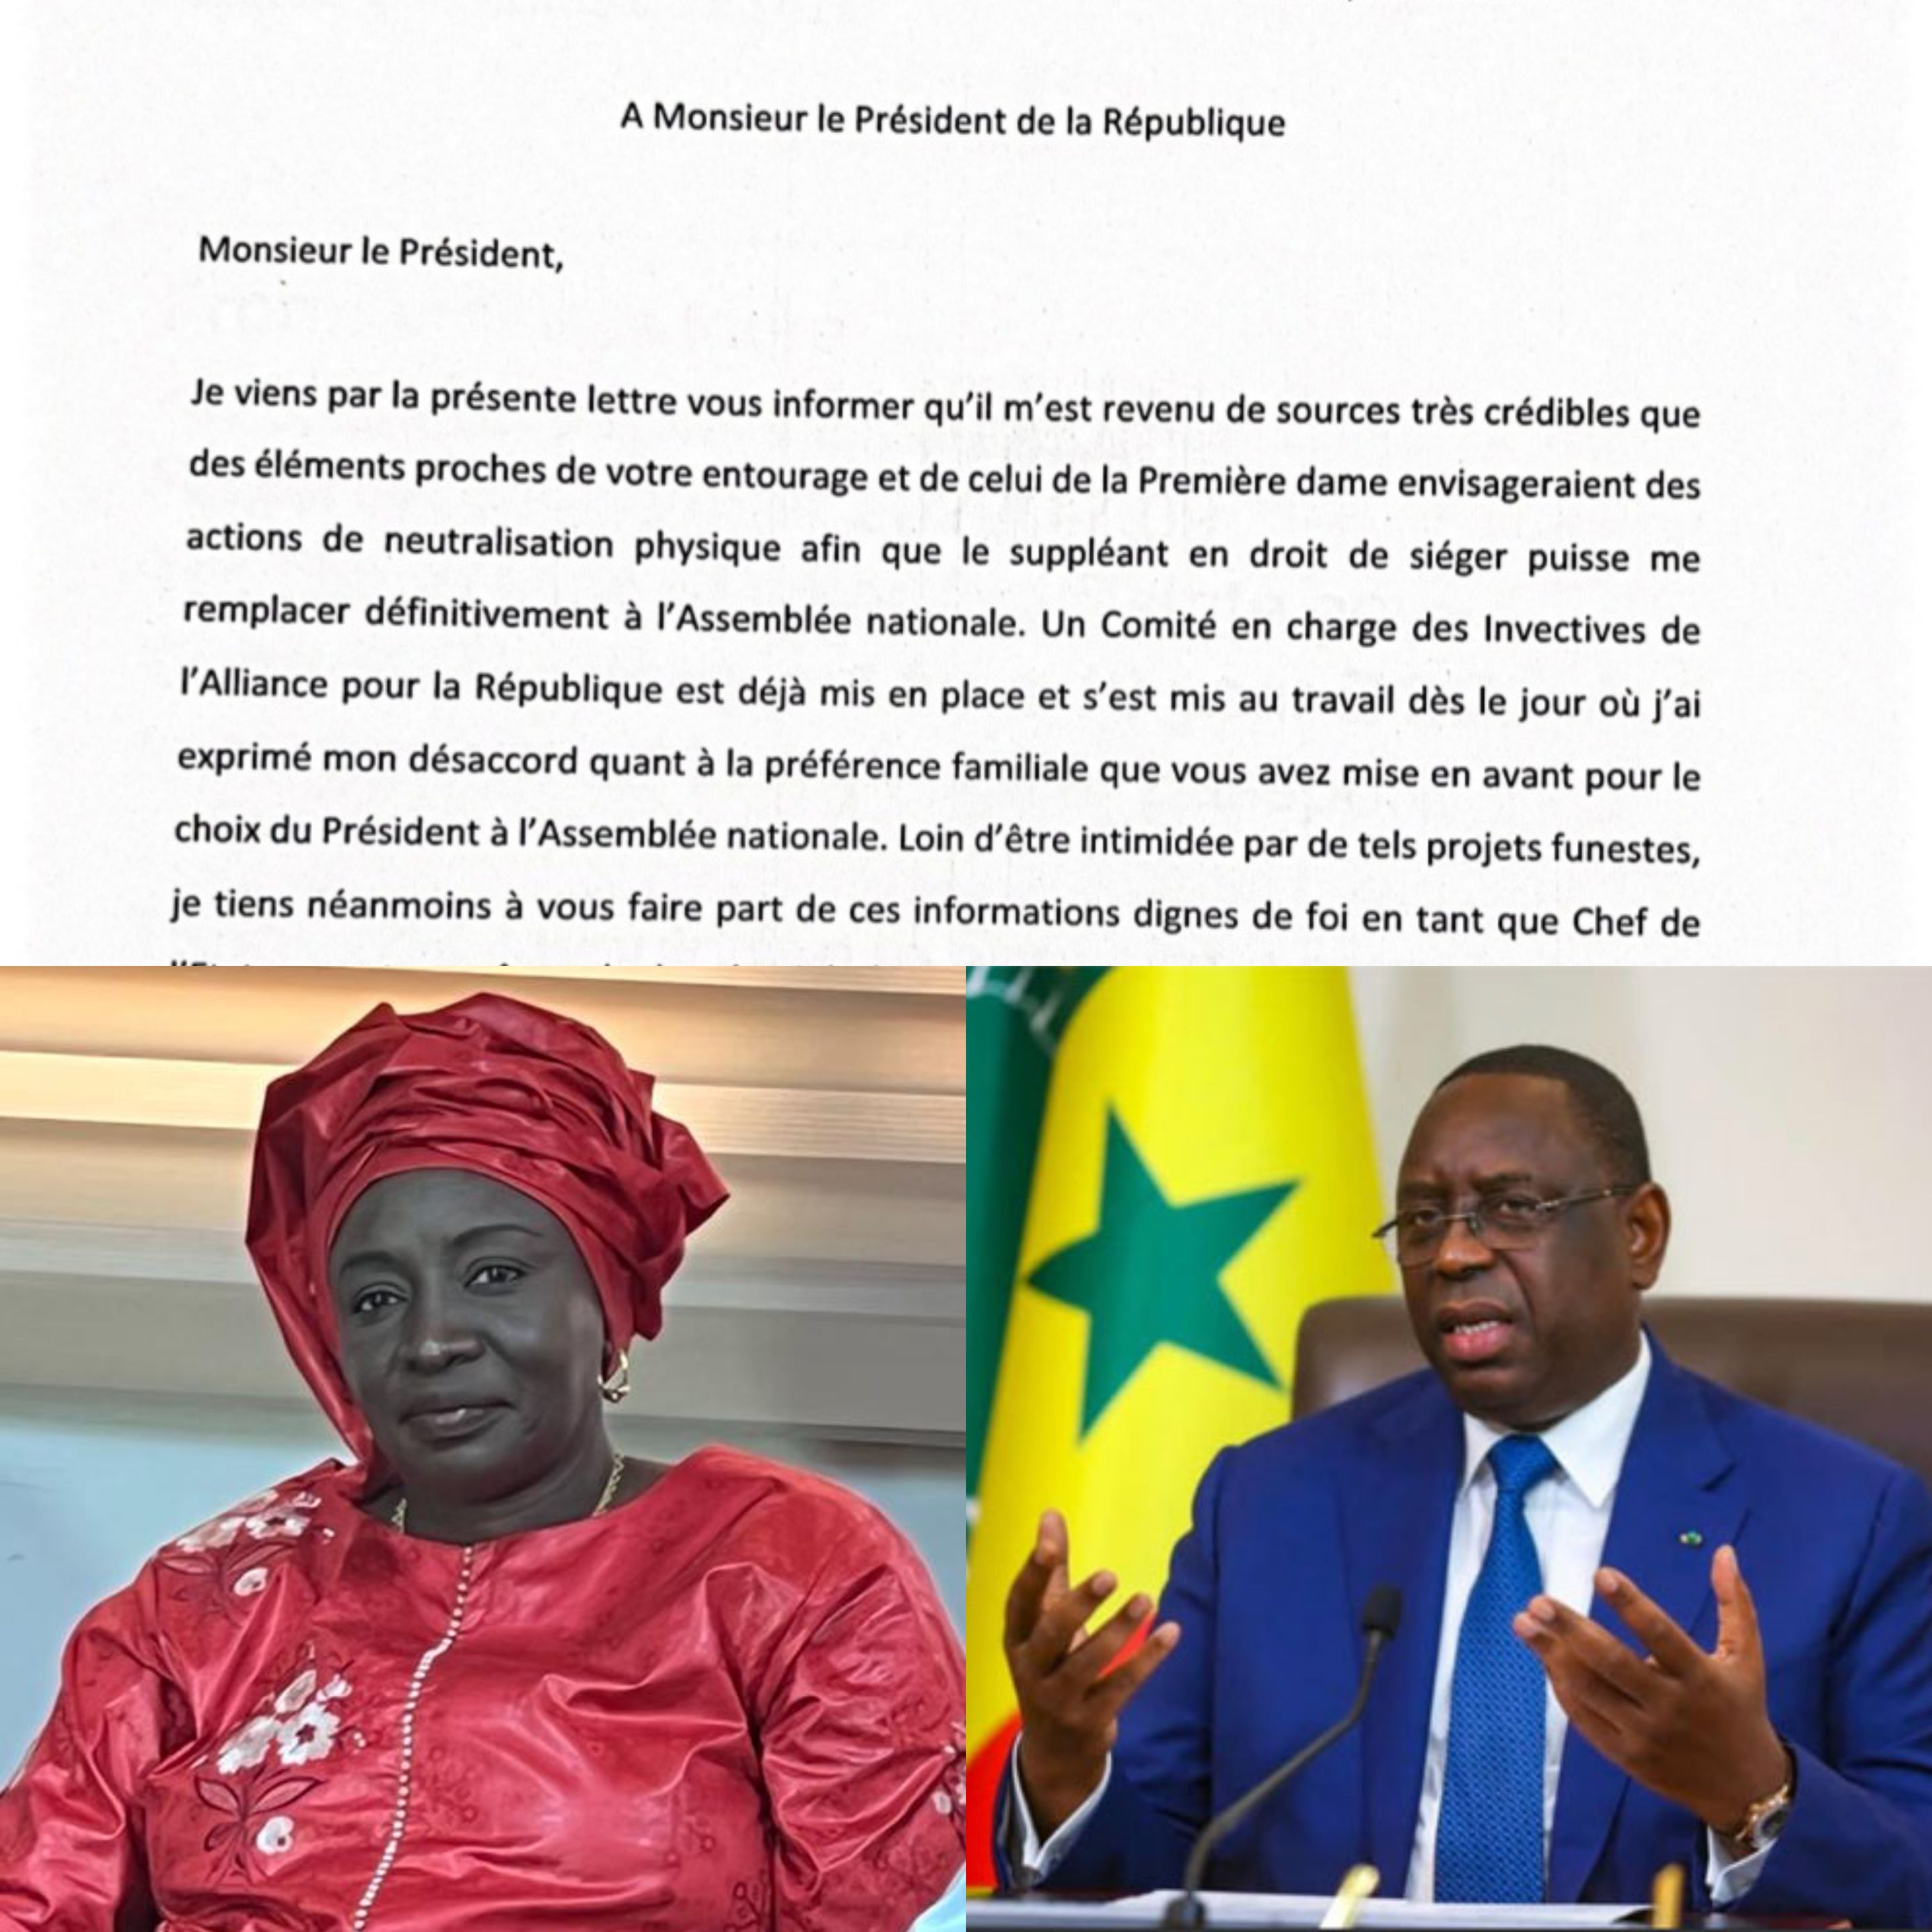 Probables actions de neutralisation physique par des éléments proches de l'entourage du président de la République et de la première dame : Aminata Touré s'en ouvre au chef de l'État.